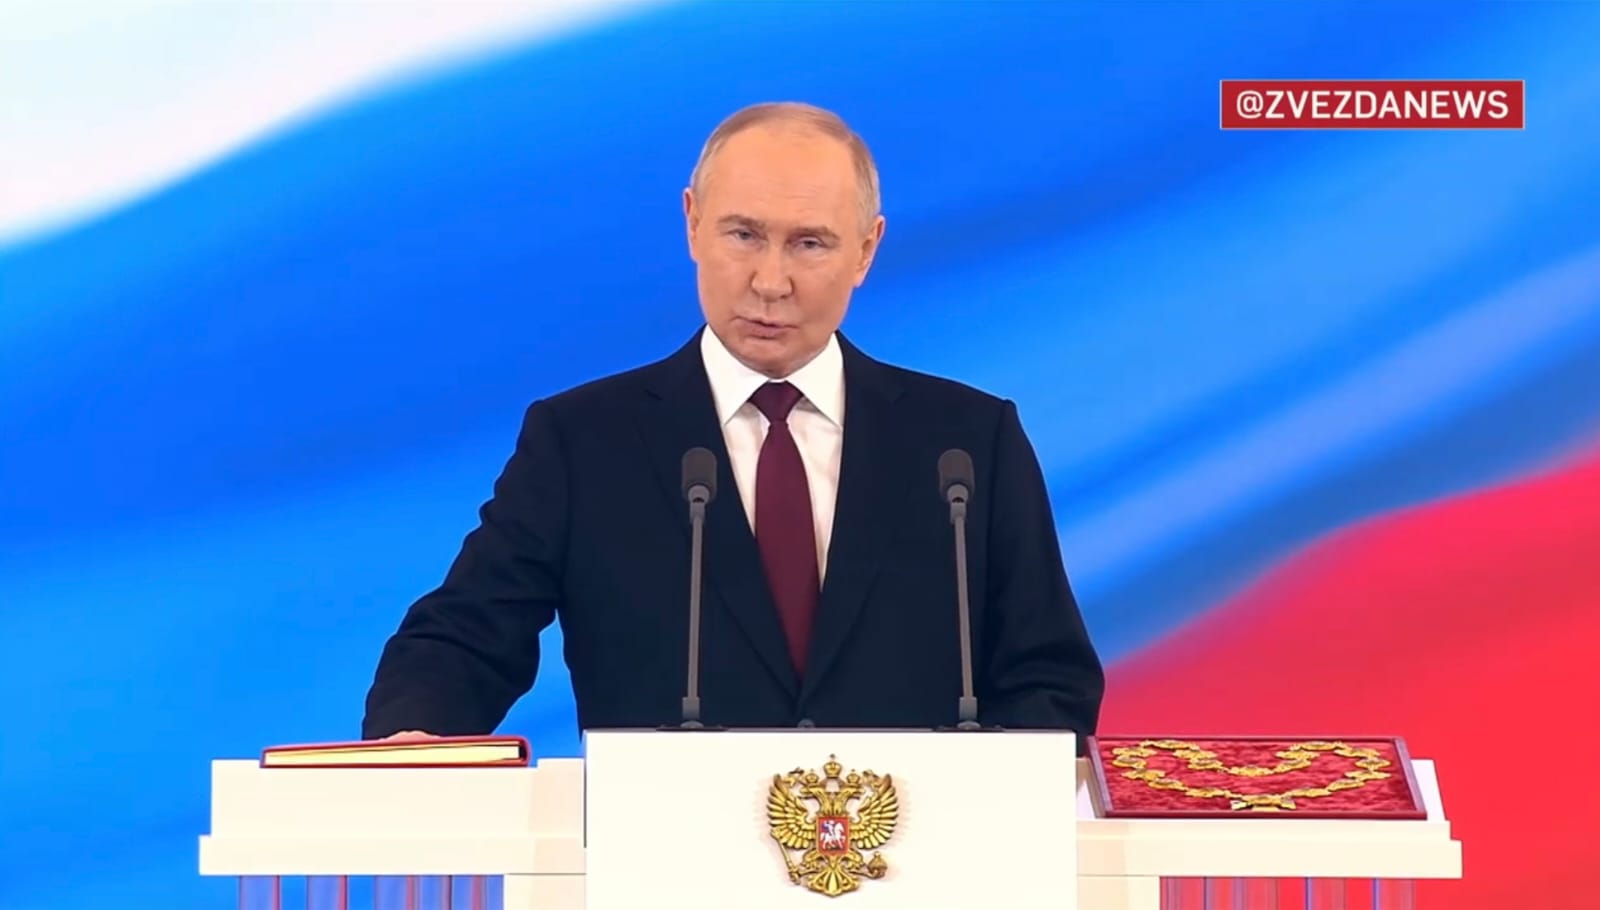 Поздравляем Президента Российской Федерации Владимира Владимировича Путина с официальным вступлением в должность